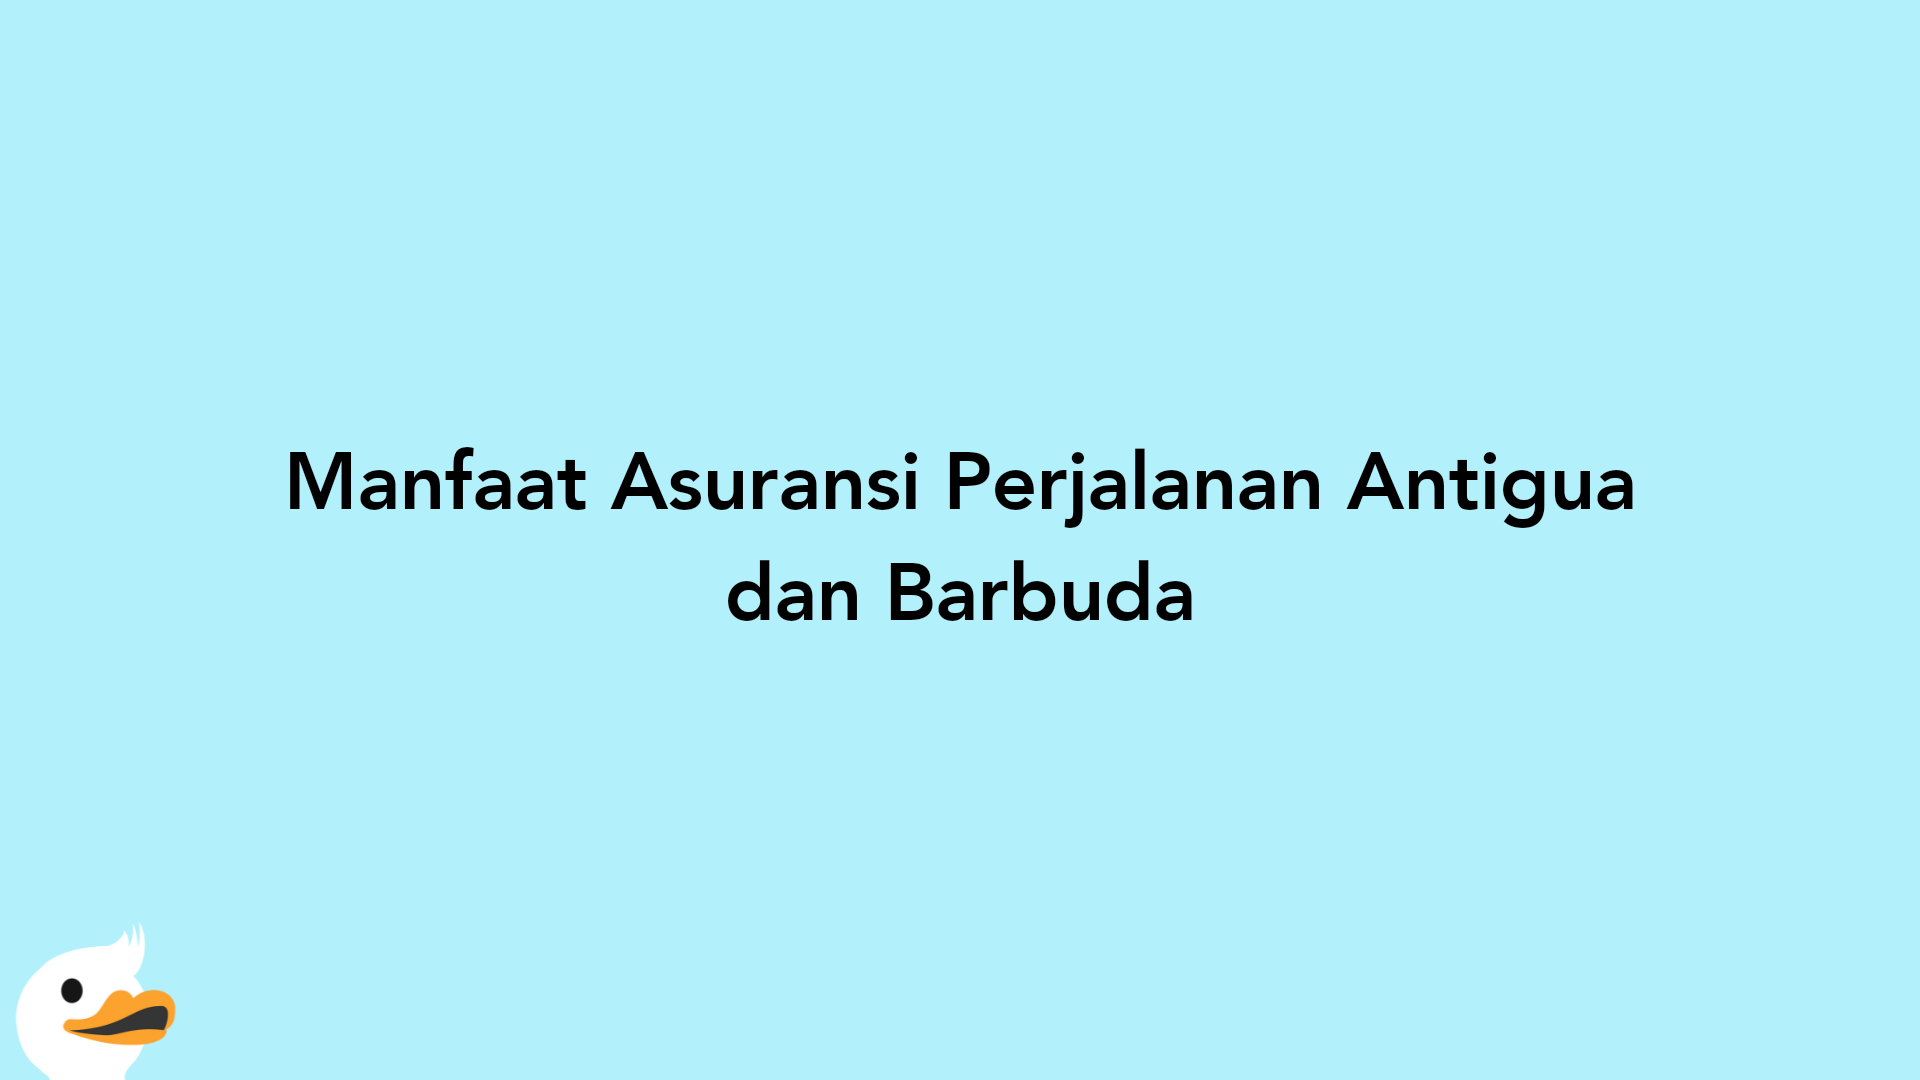 Manfaat Asuransi Perjalanan Antigua dan Barbuda